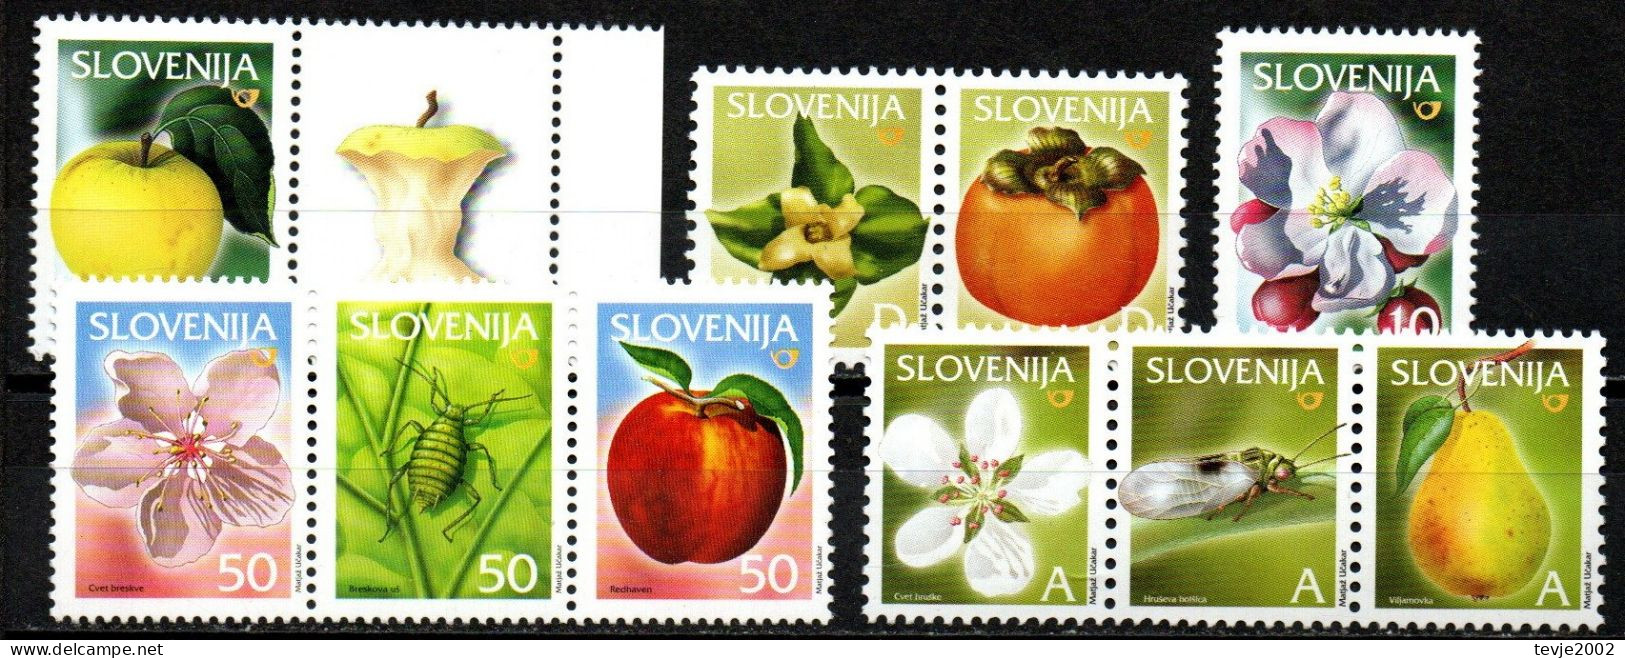 Slowenien Slovenija - Lot Freimarken Aus 2000 - 2006 - Postfrisch MNH - Früchte Obst Fruits - Gemüse